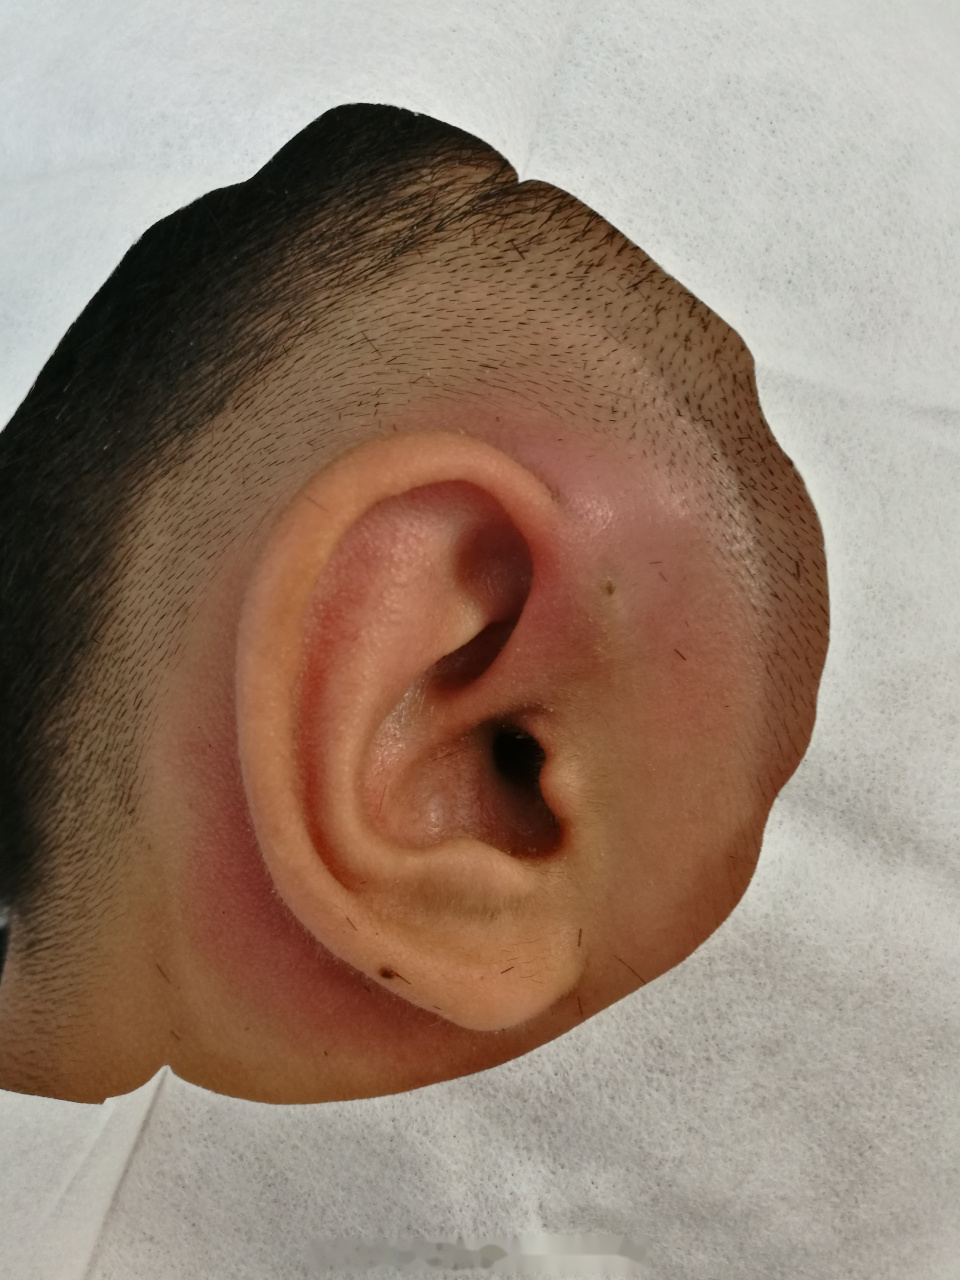 同事的孩子,双侧先天性耳前瘘管,左侧反复形成脓肿,去年切除后平安无